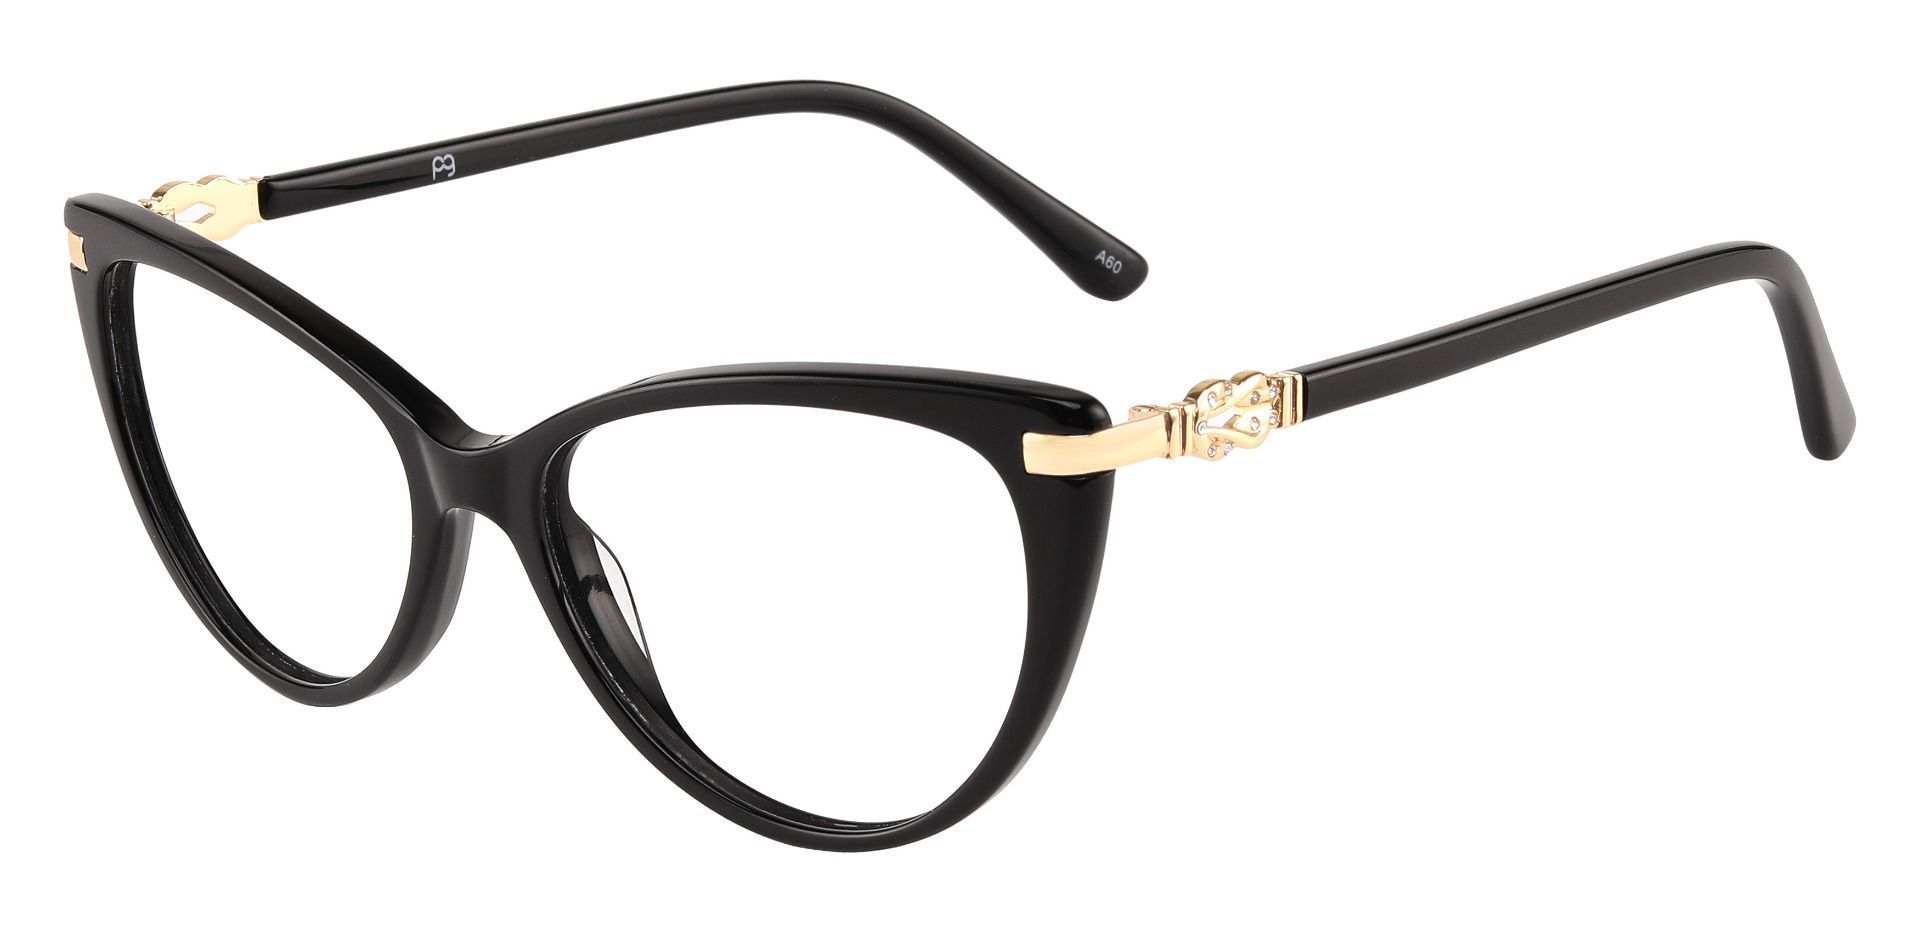 Starla Cat Eye Prescription Glasses - Black | Women's Eyeglasses ...